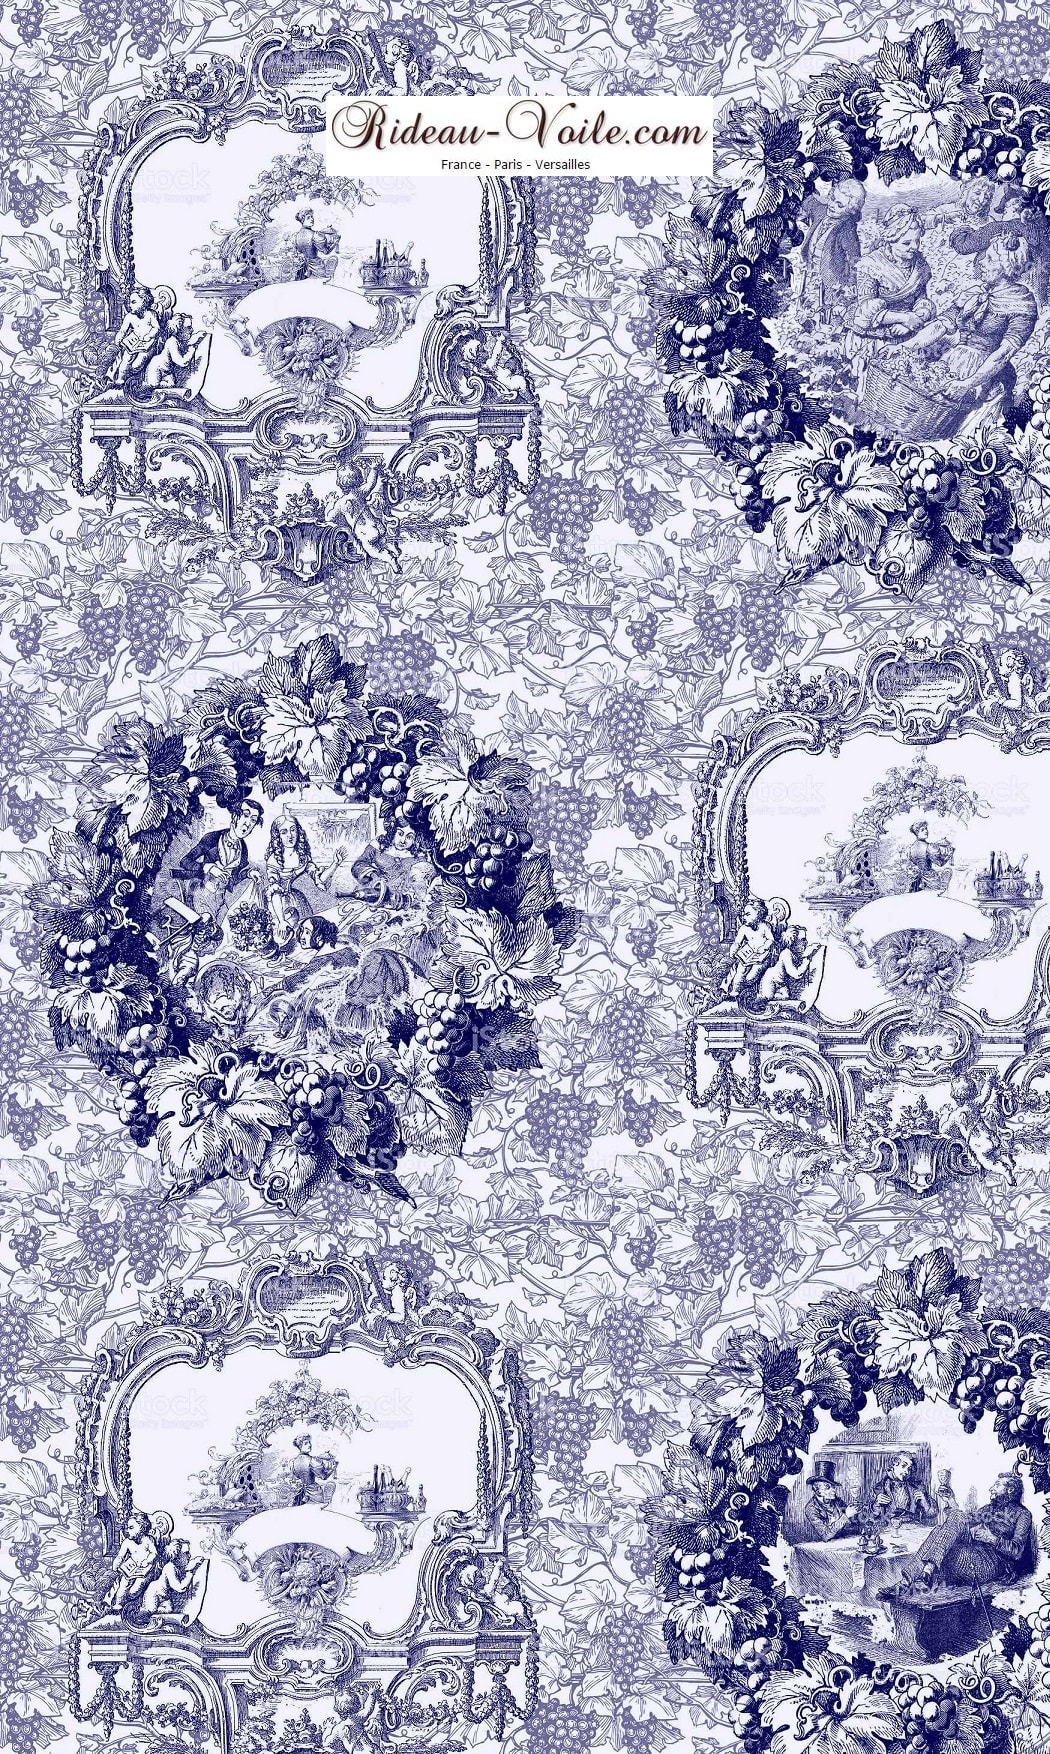 Tissu imprimé bleu Tissu au mètre comment acheter trouver boutique Paris toile de jouy  pour décoration, agencement,  haut gamme sur mesure. Papier peint, luminaire, abat-jour, rideau, couette et coussin. ignifugé, occultant, Versailles, Nice, Monaco.